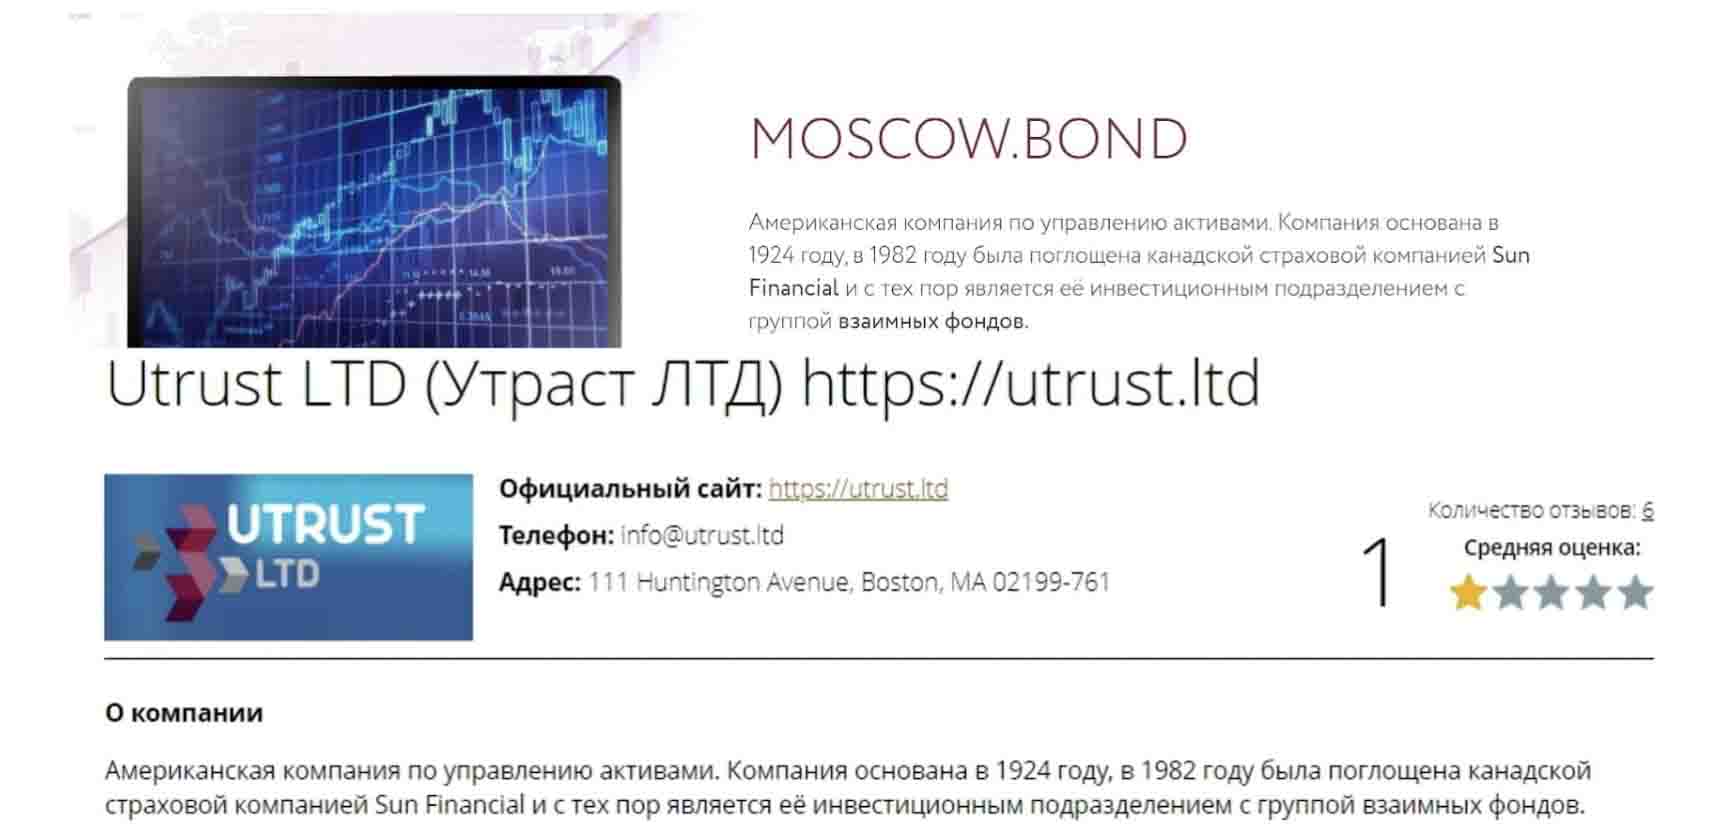 Moscow Bond — старые лохоброкеры под новой вывеской